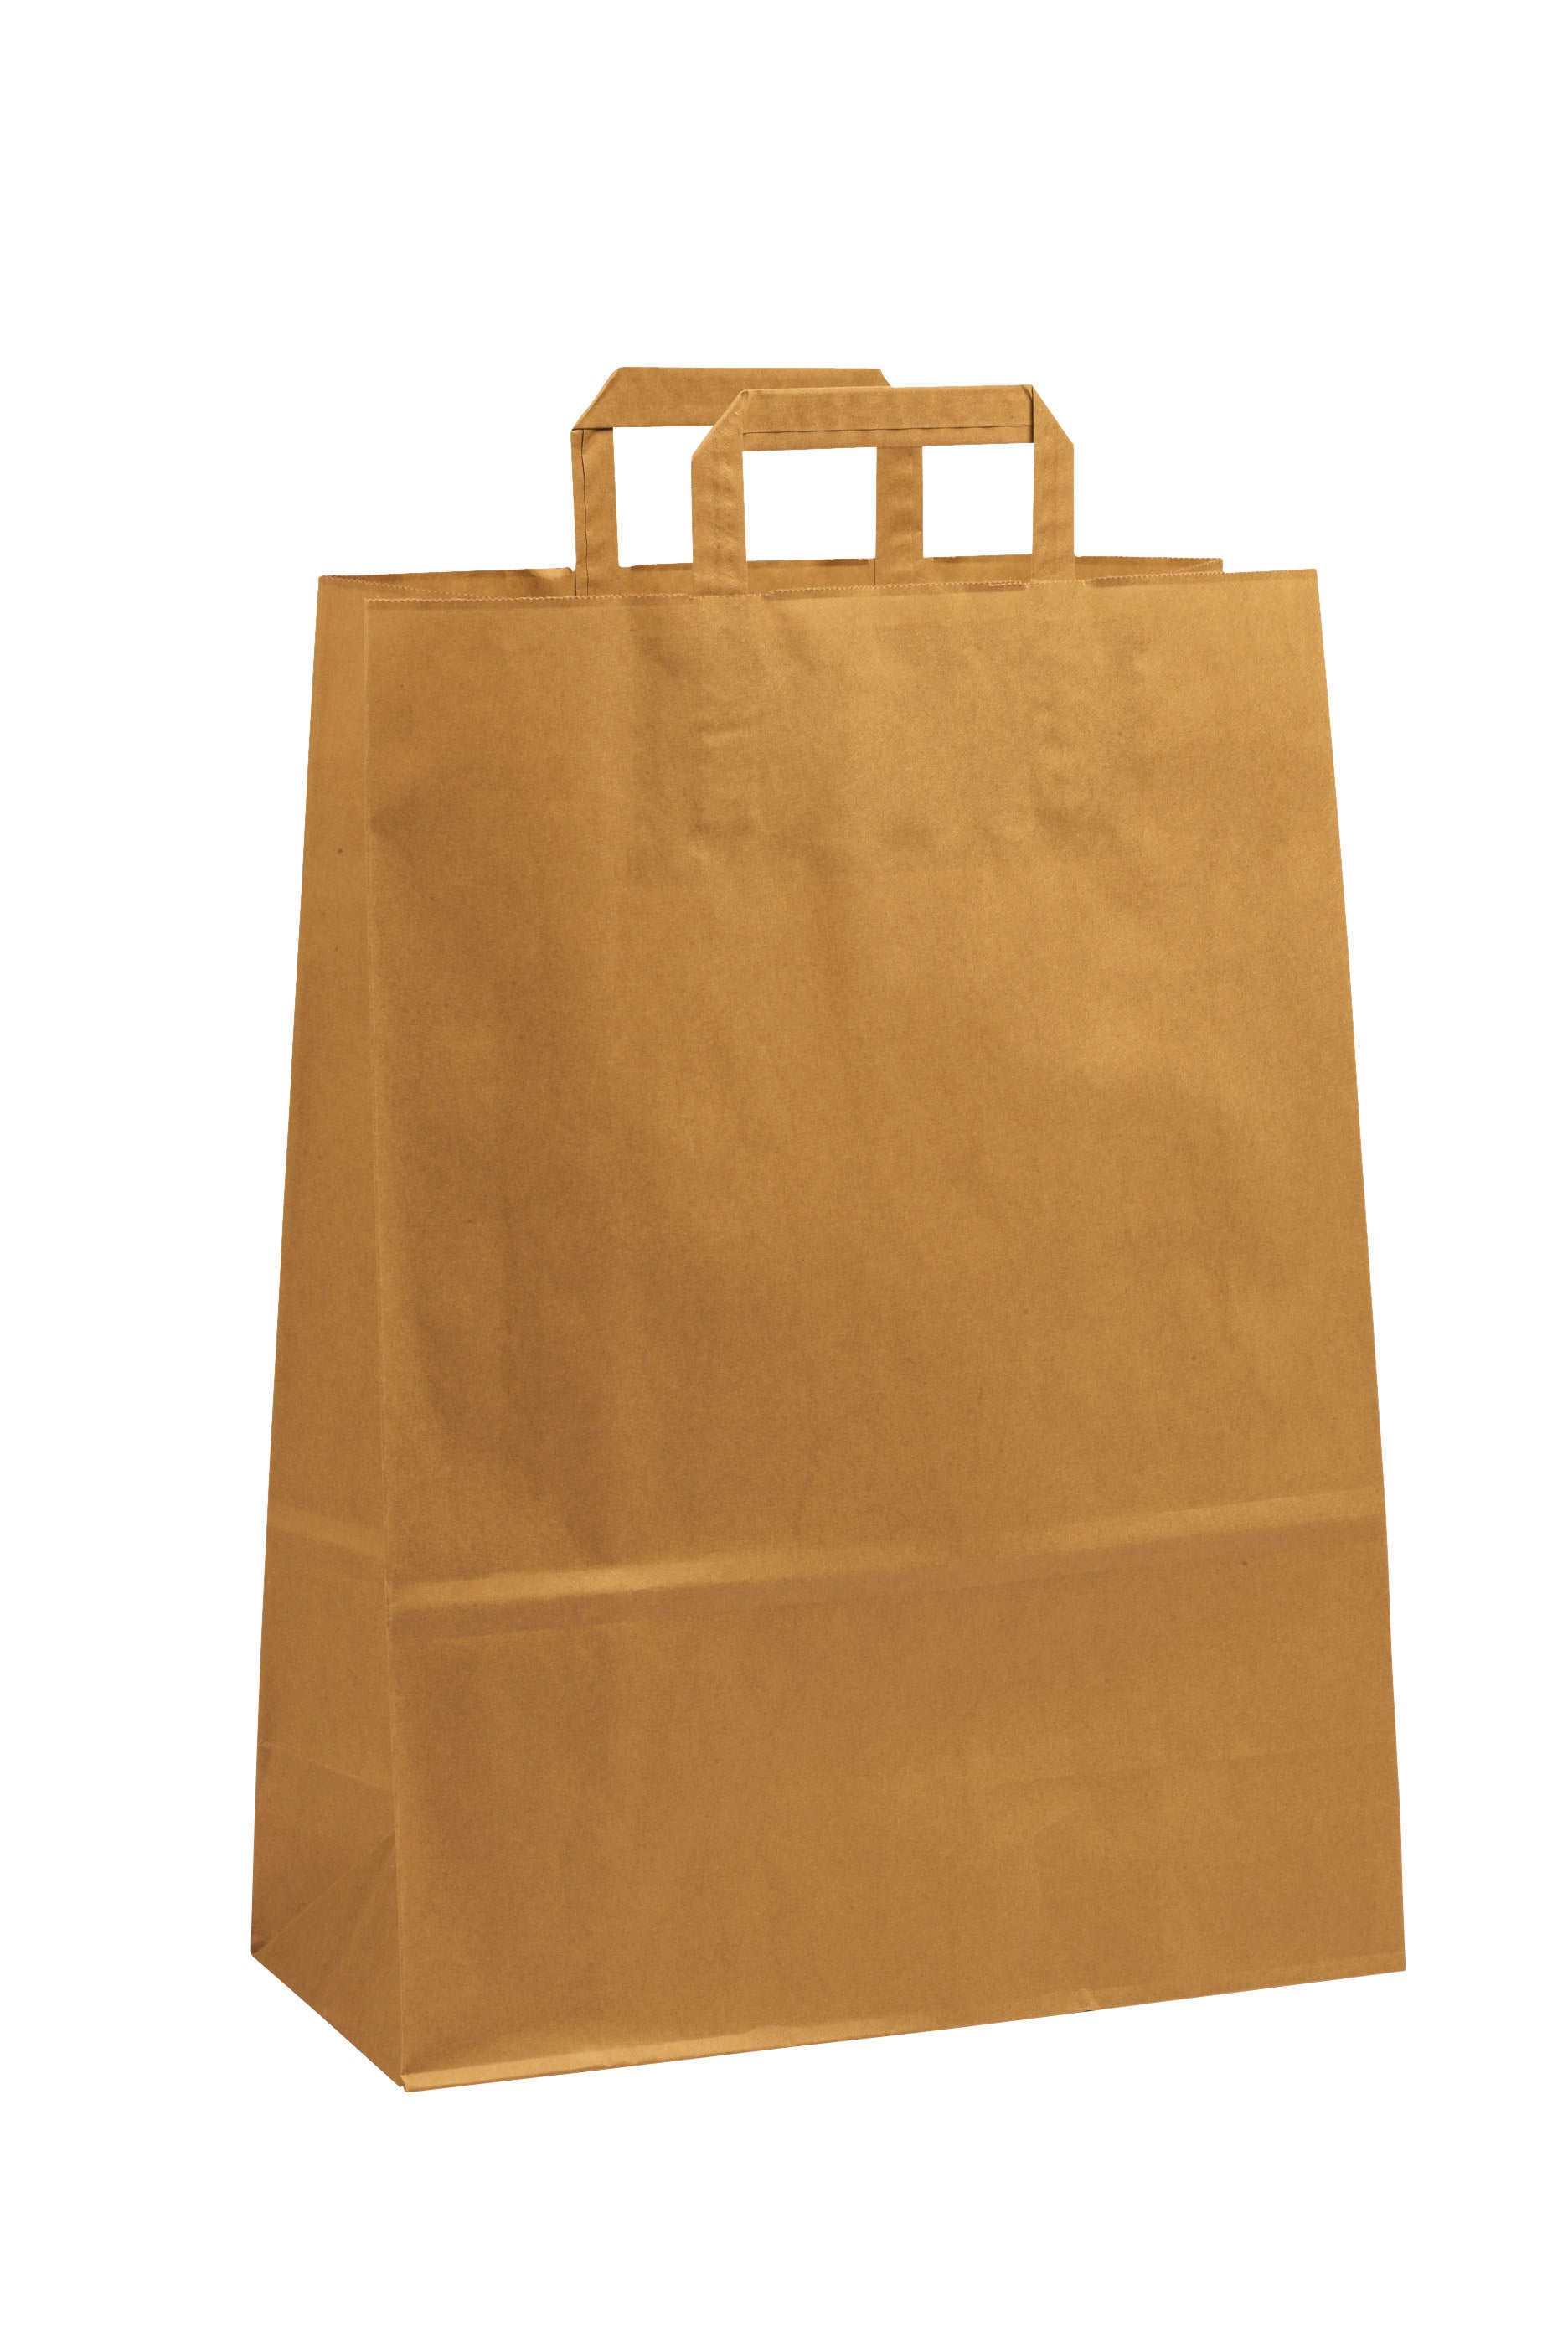 Extra Large Brown Kraft Takeaway Bag